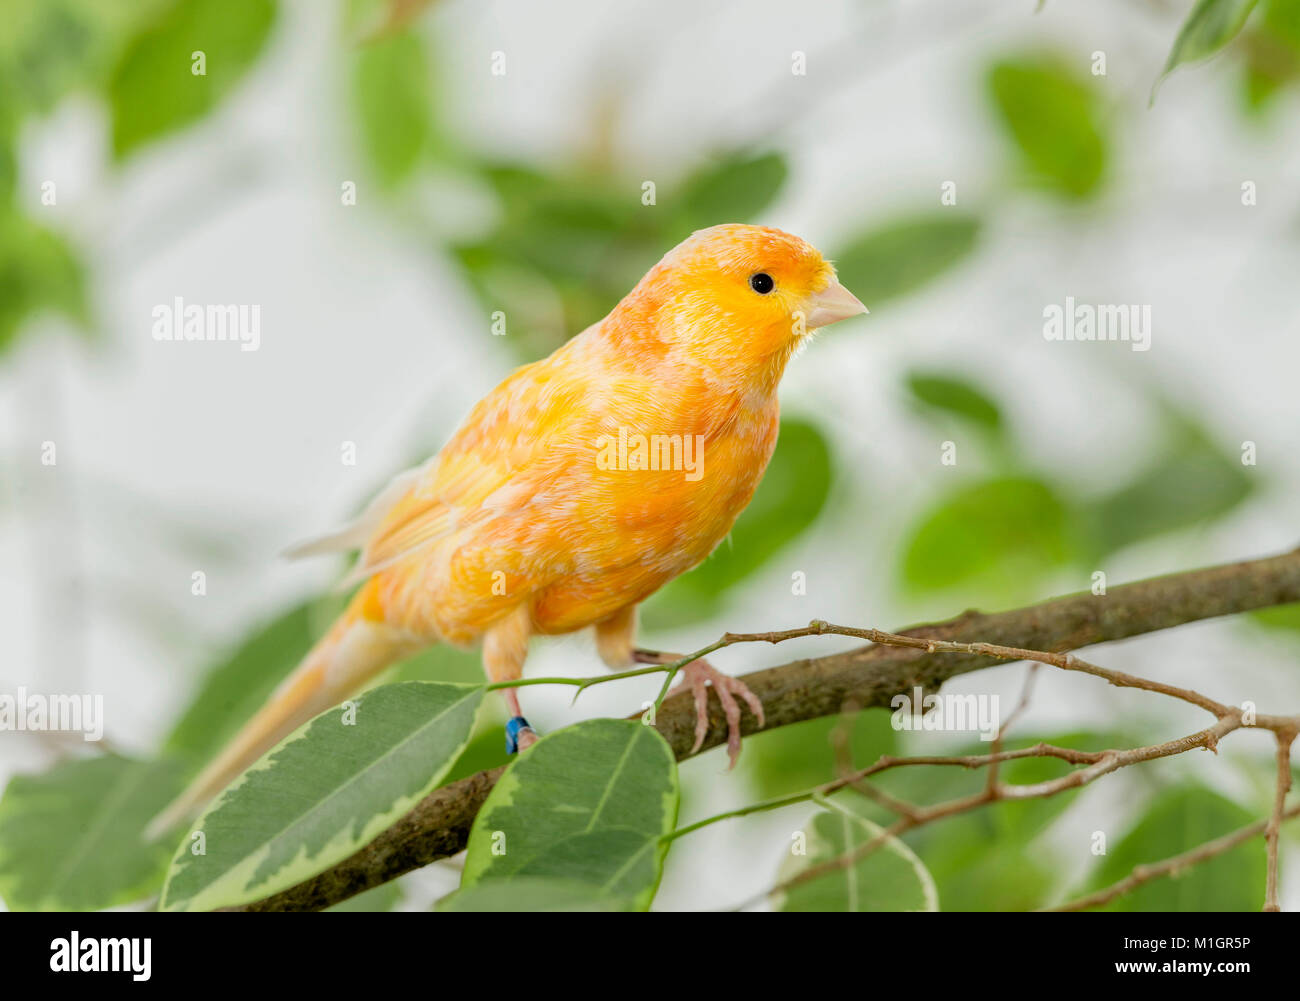 Inländische Kanarienvogel. Orange Vogel thront auf einem Benjamin Abb. Zweig. Deutschland Stockfoto